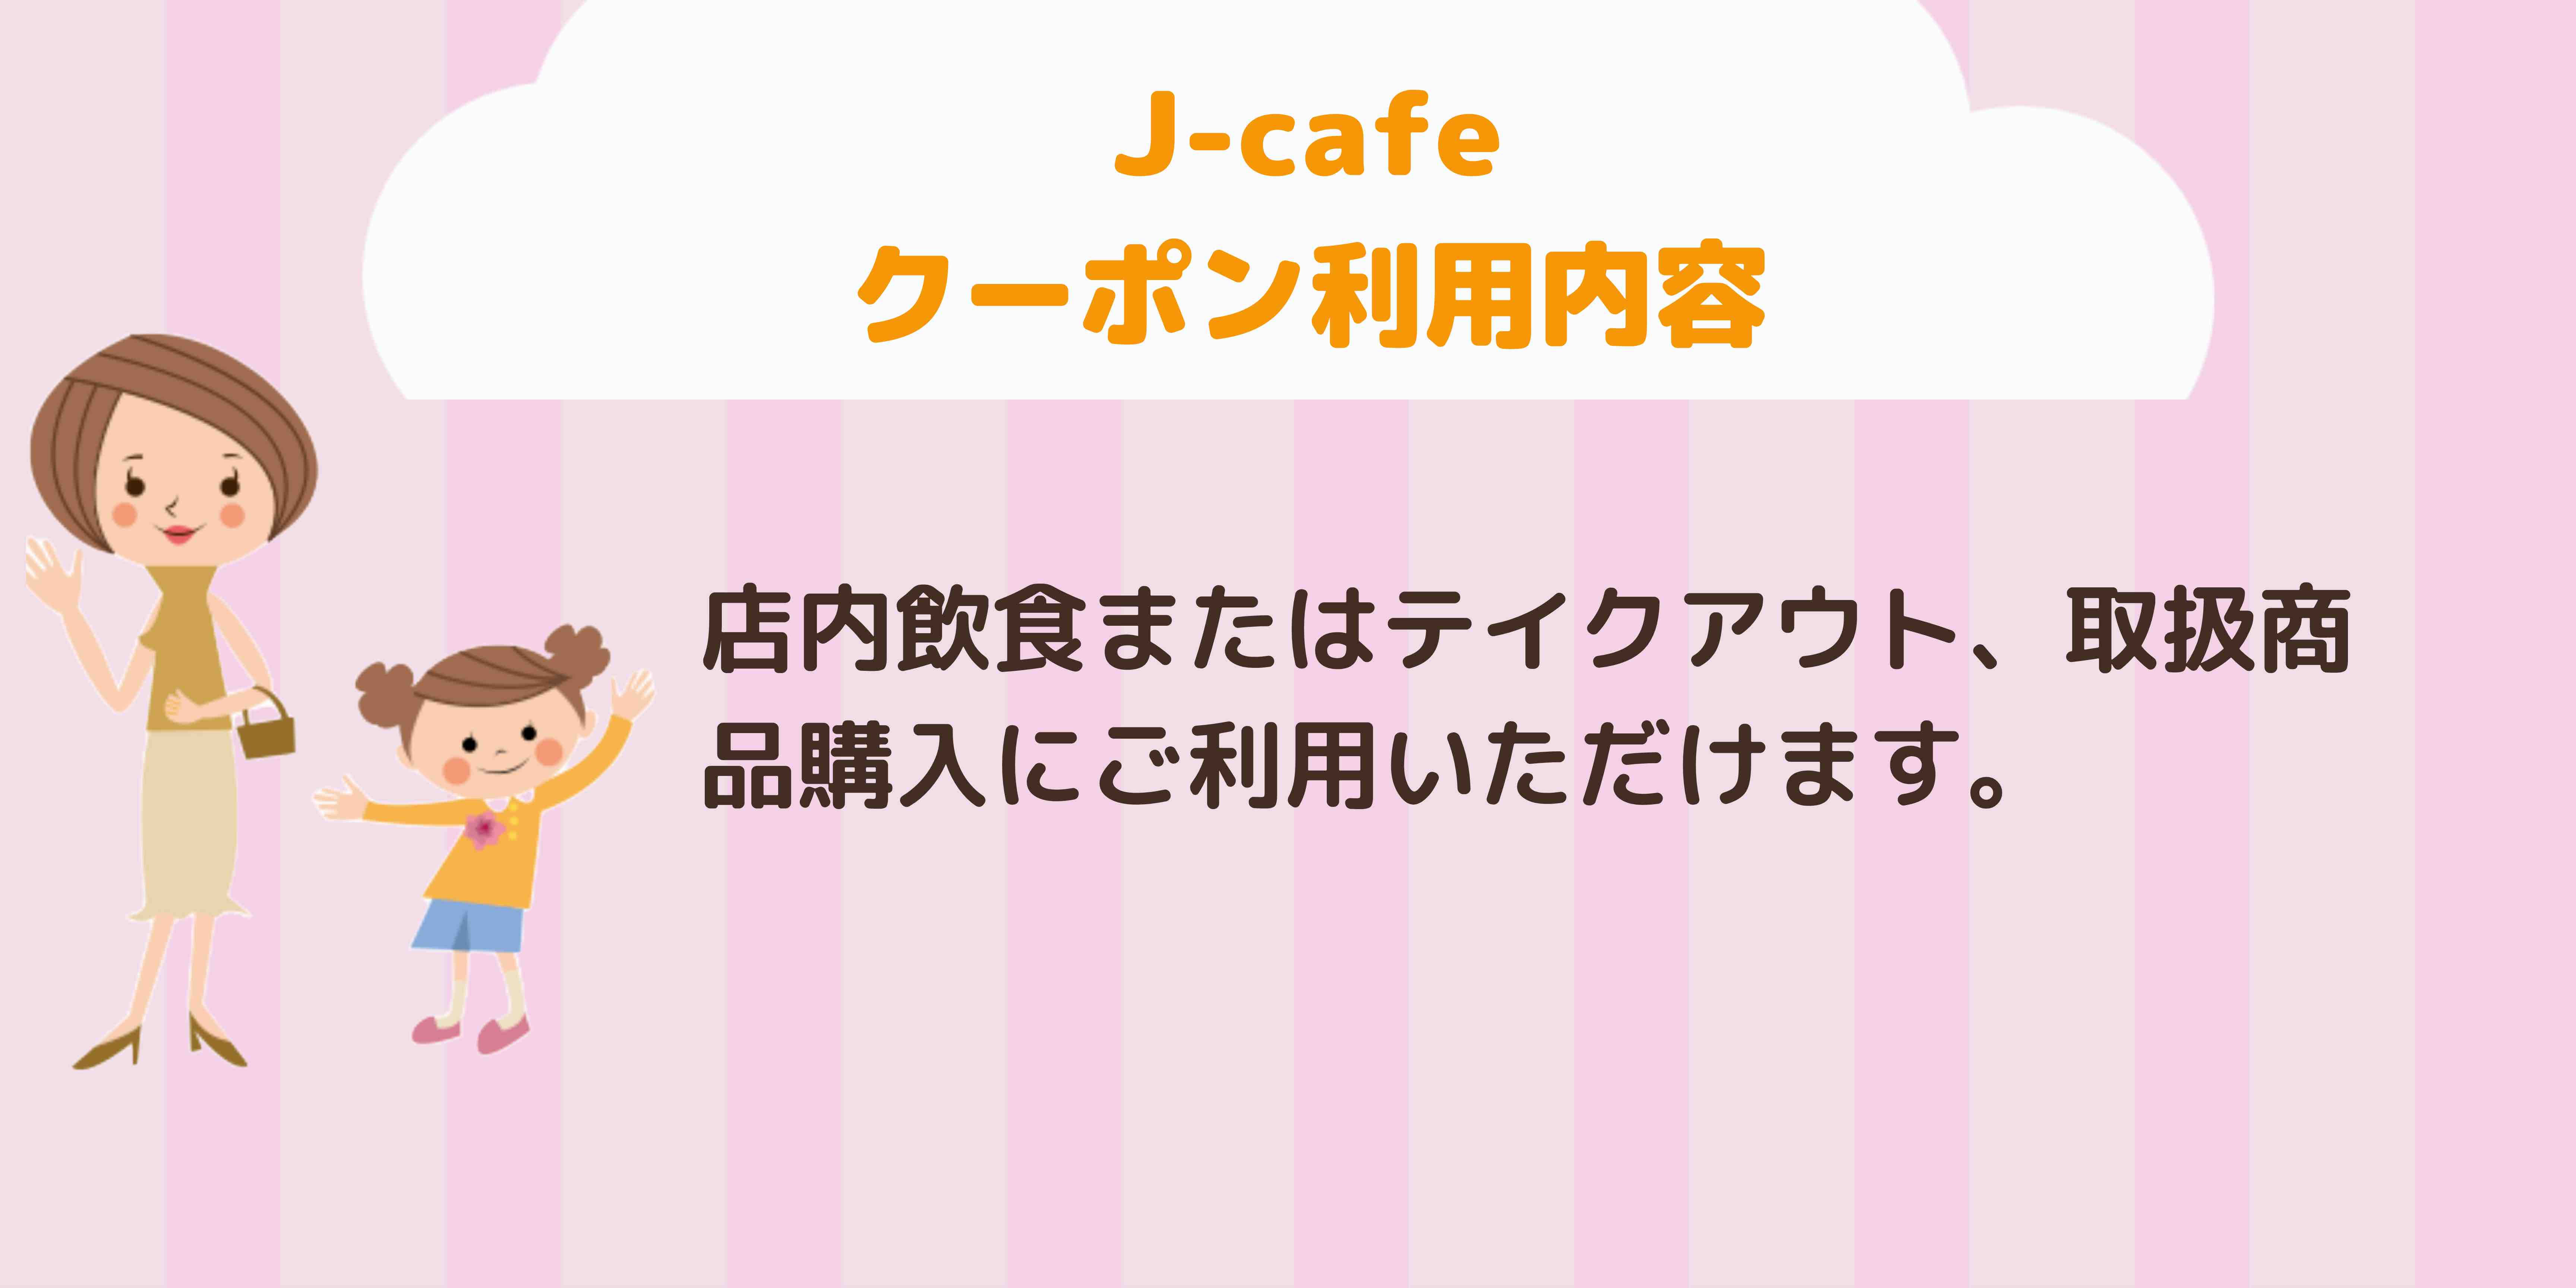 J-cafe